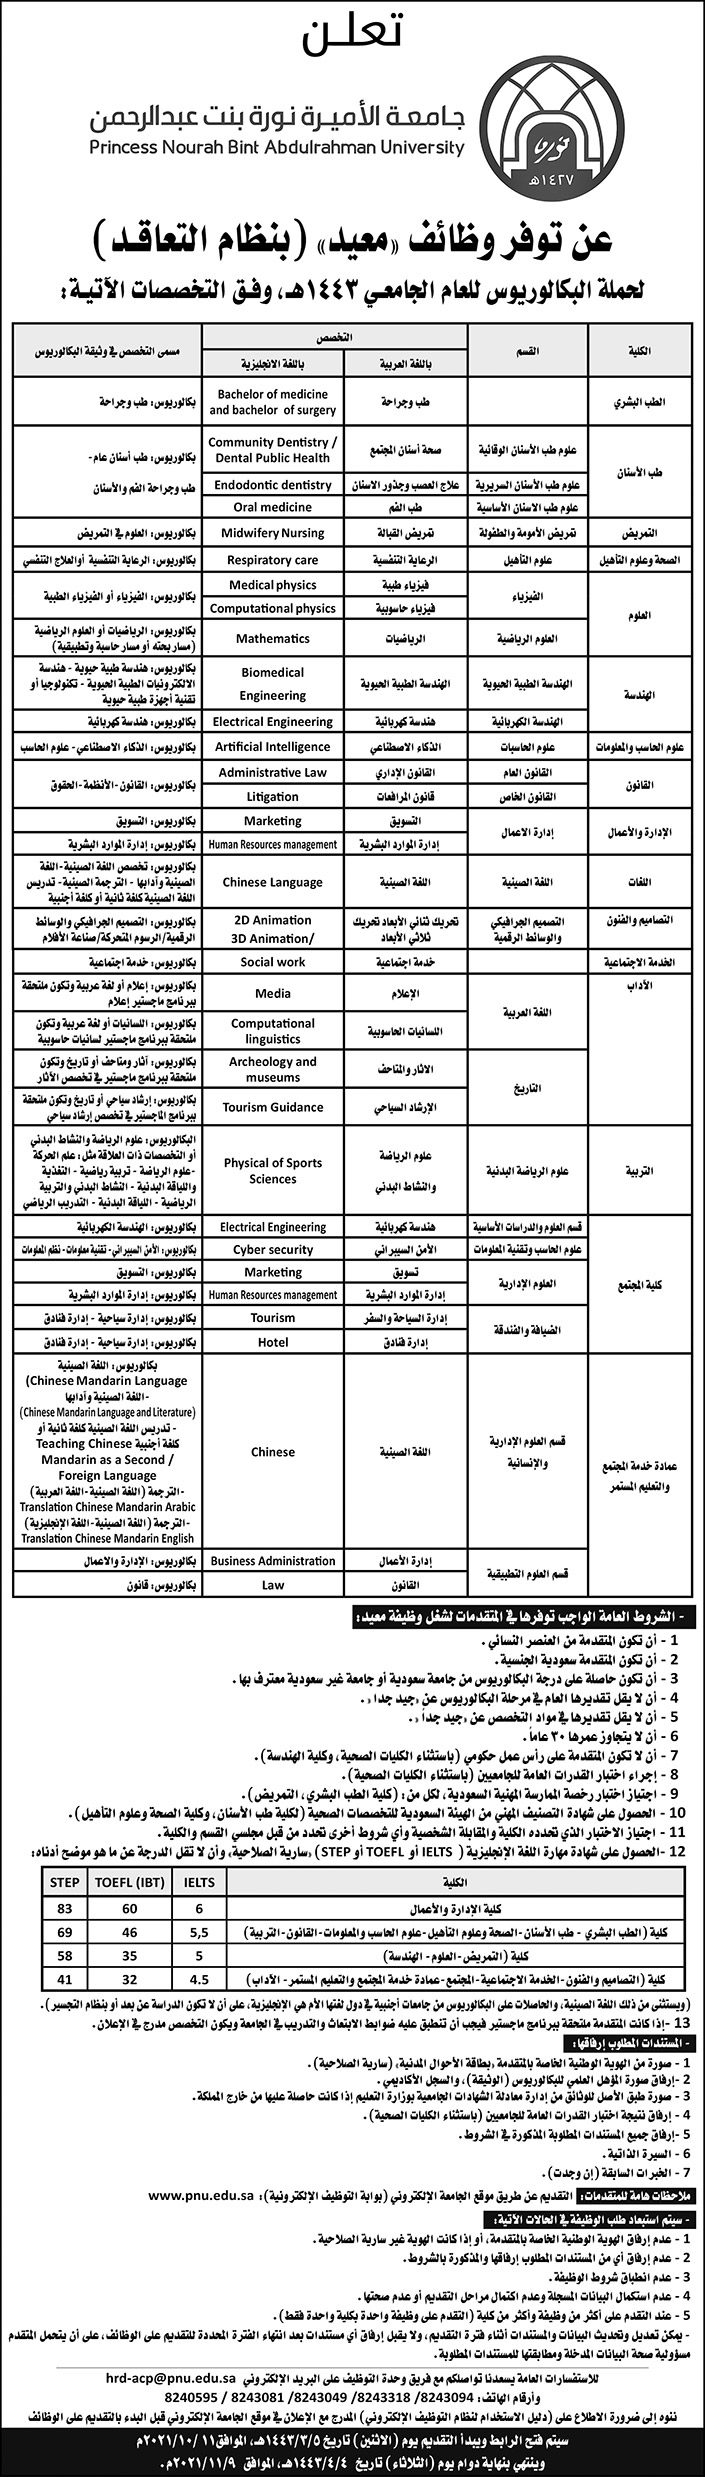 جامعة الأميرة نورة بنت عبد الرحمن تعلن عن وظائف (معيد) (بنظام التعاقد) لحملة البكالوريوس وفق بعض التخصصات 